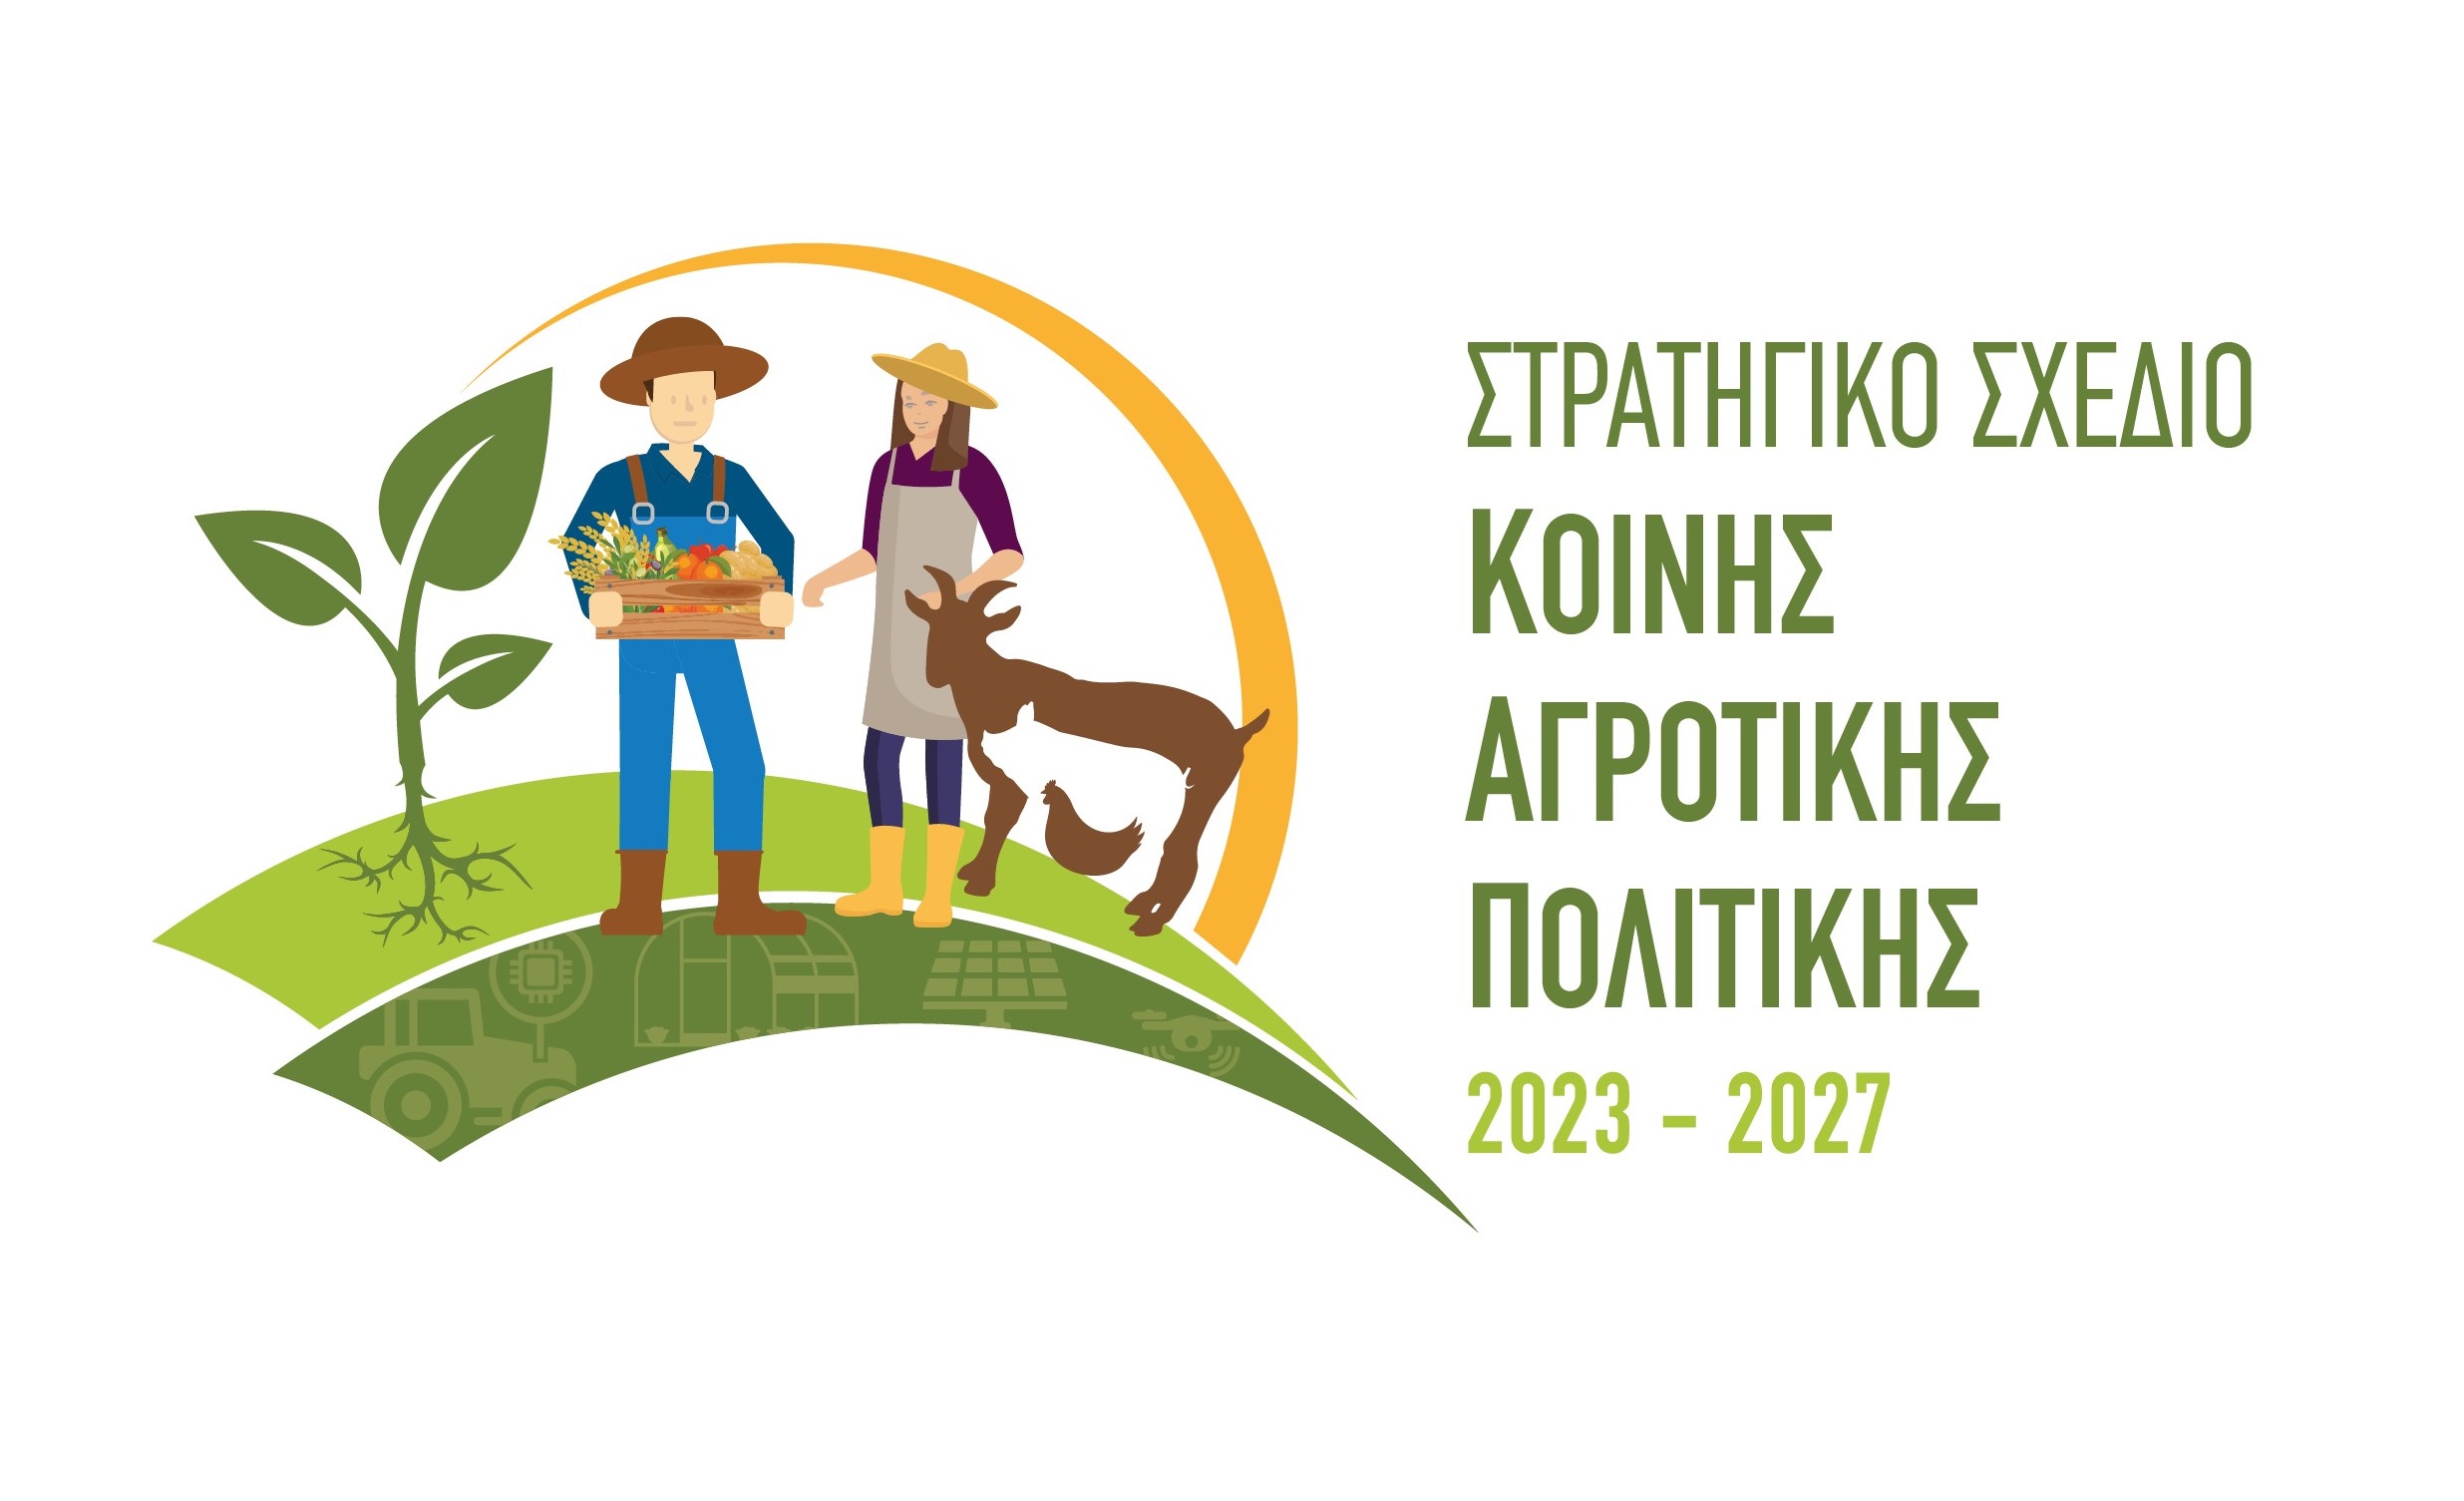 Στρατηγικό Σχέδιο Κοινής Αγροτικής Πολιτικής 2023 - 2027